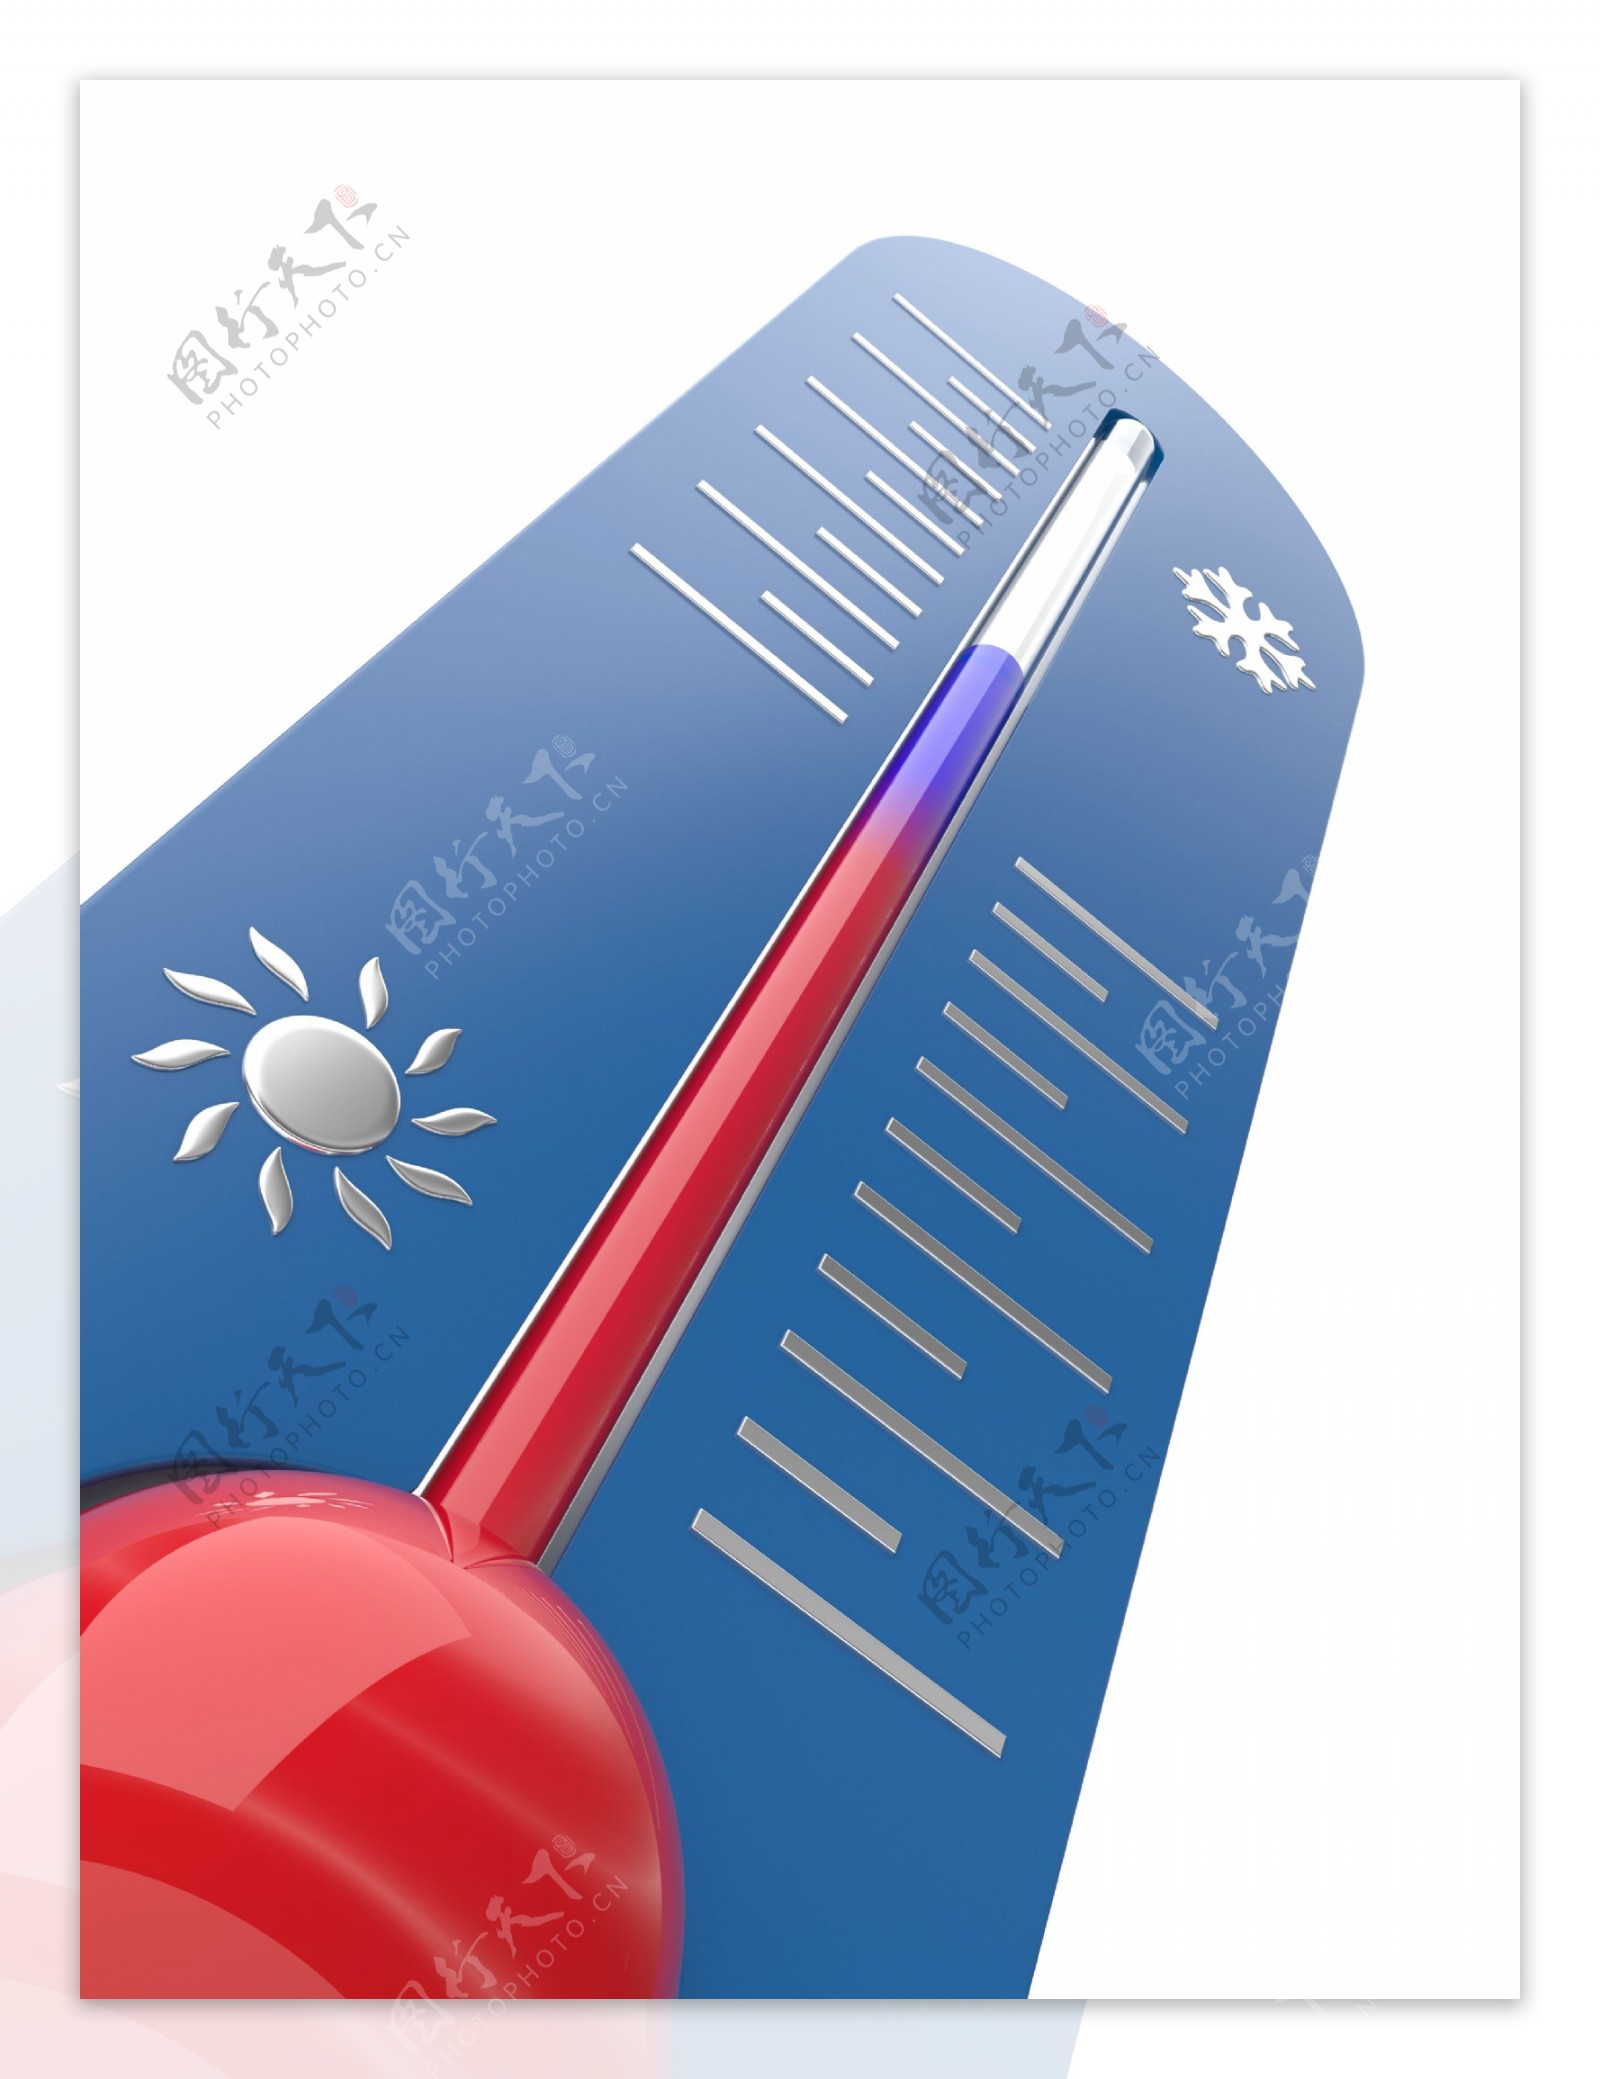 体温计测量腋下温度后需要加0.5度吗？-